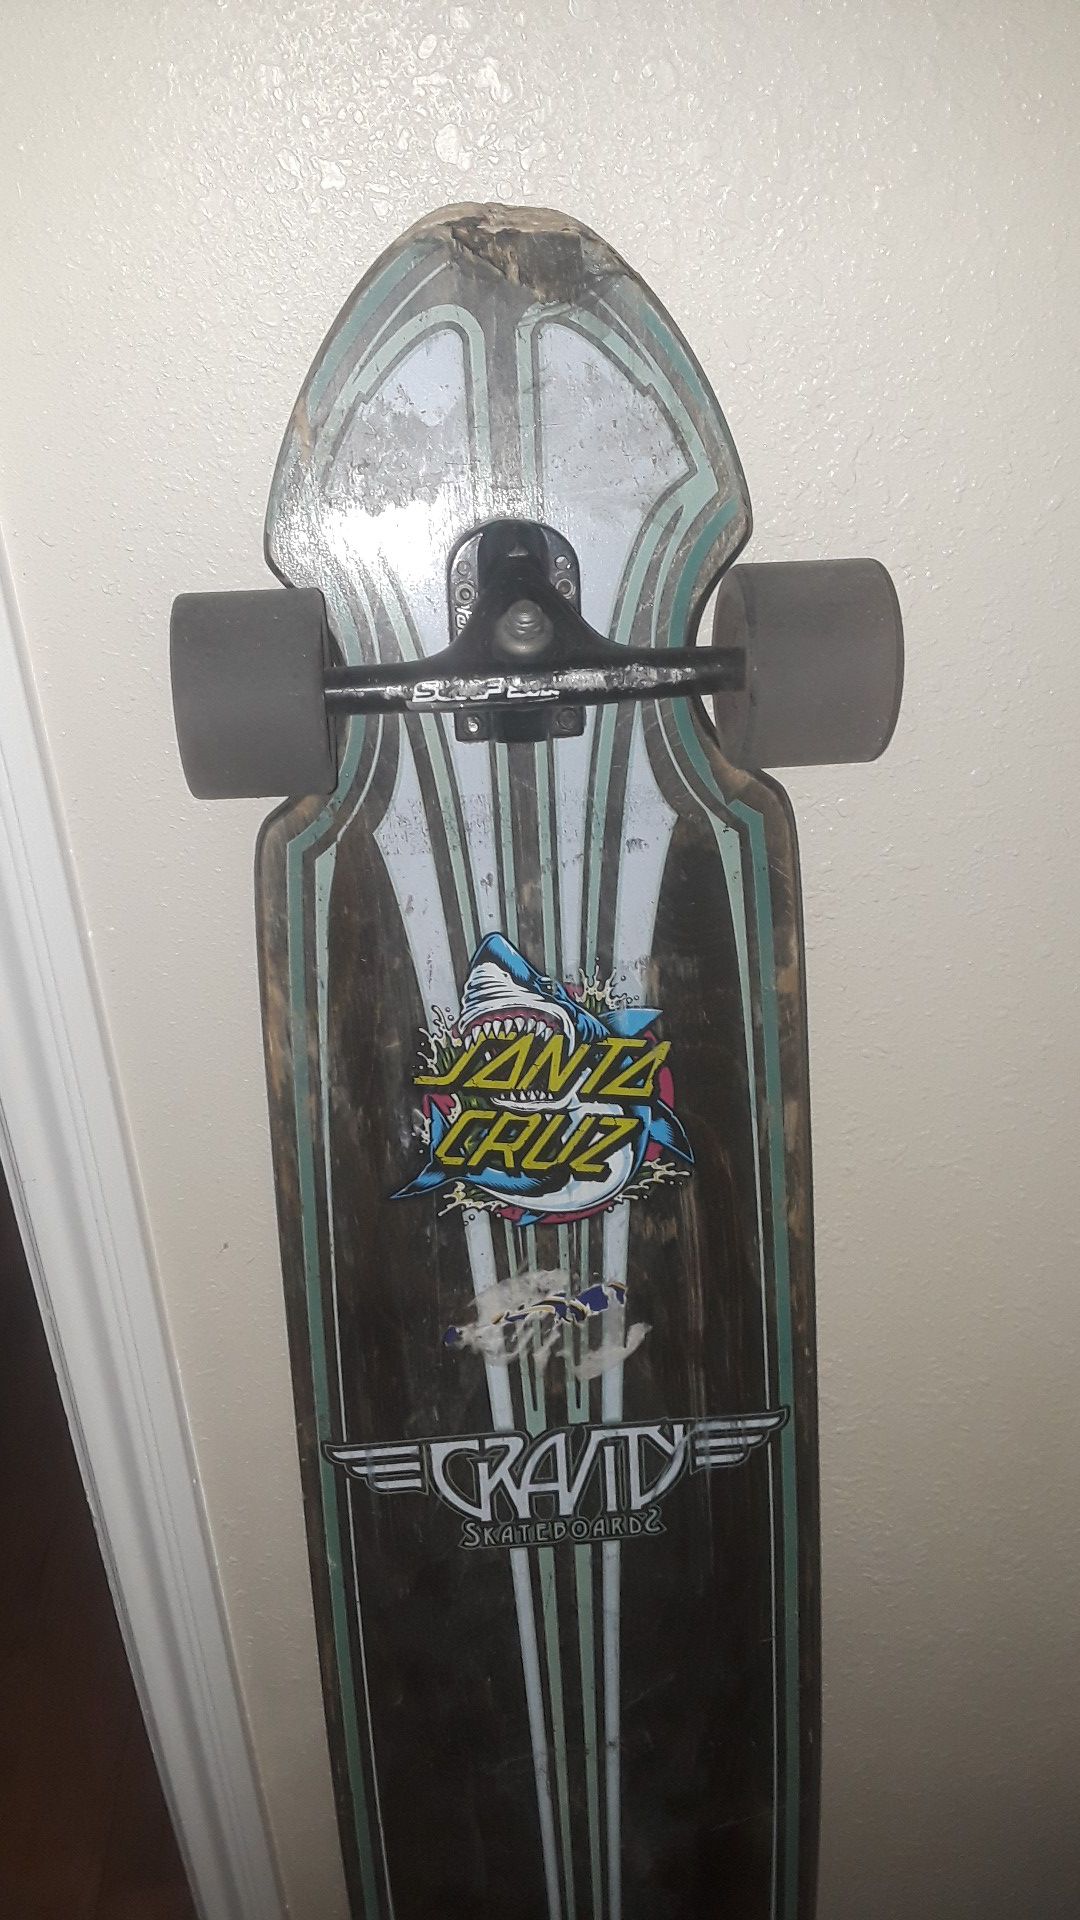 Long board skateboard